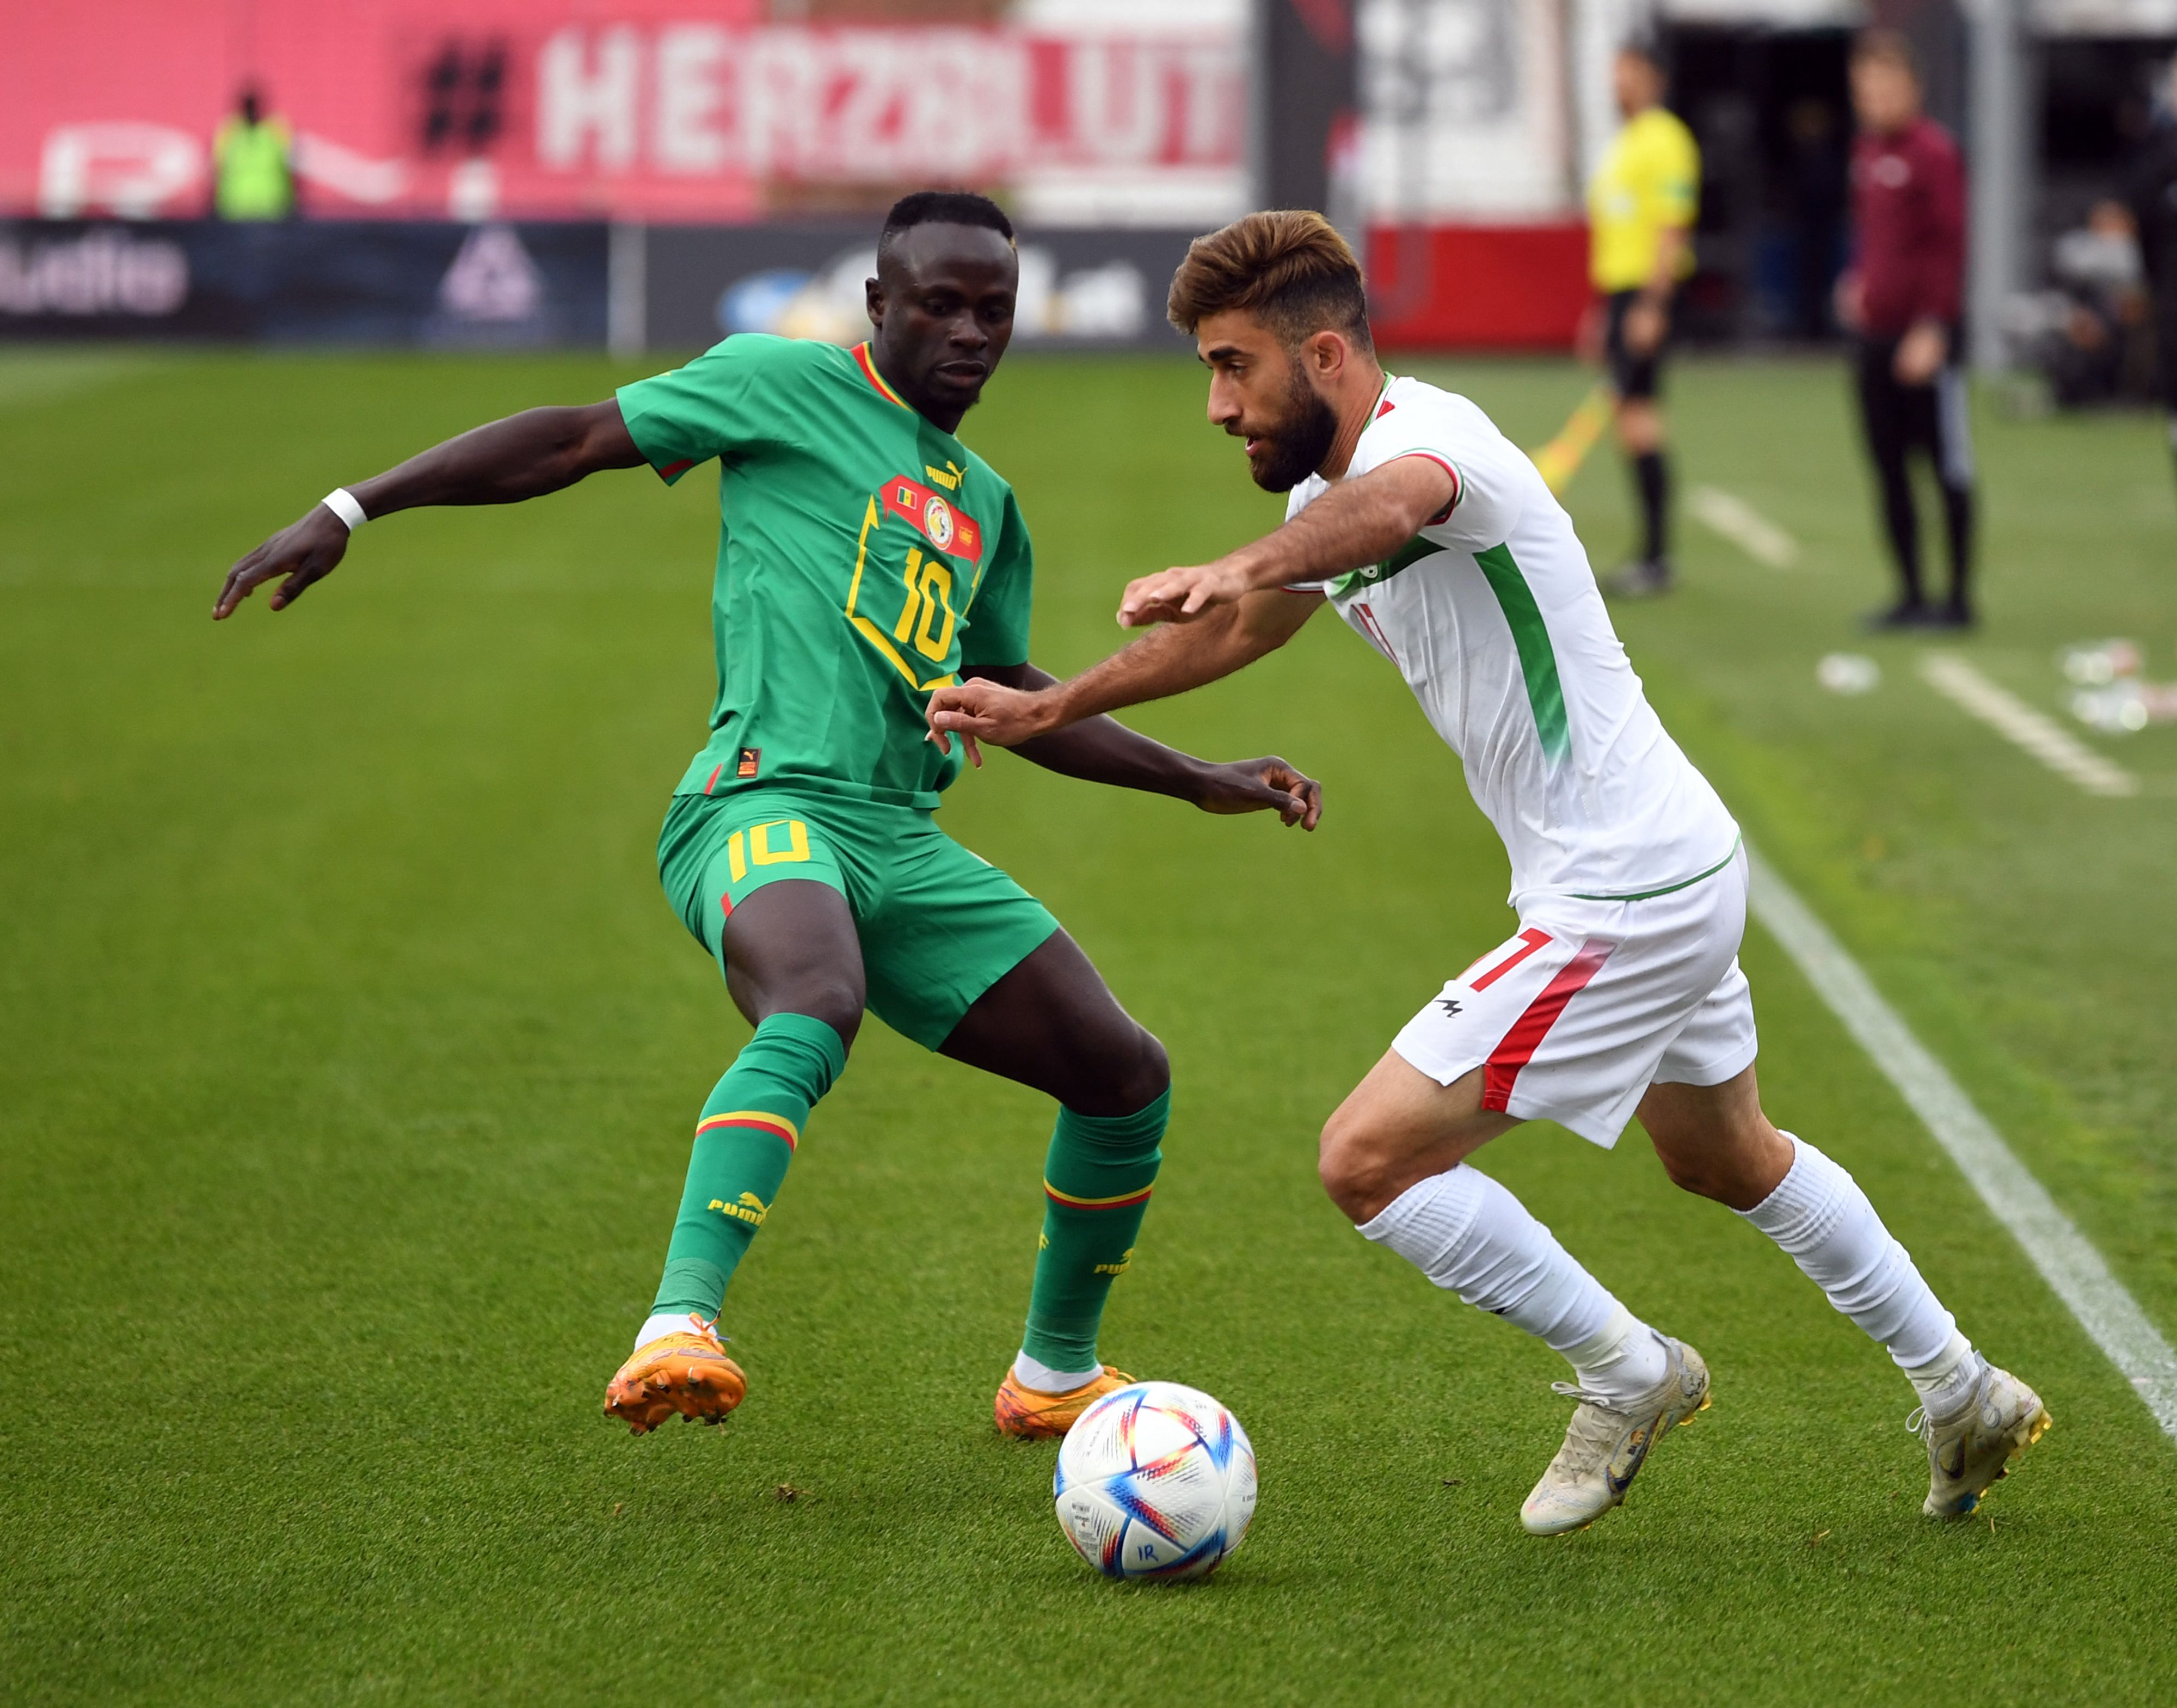 Döntetlent hozott a Szenegál-Irán mérkőzés